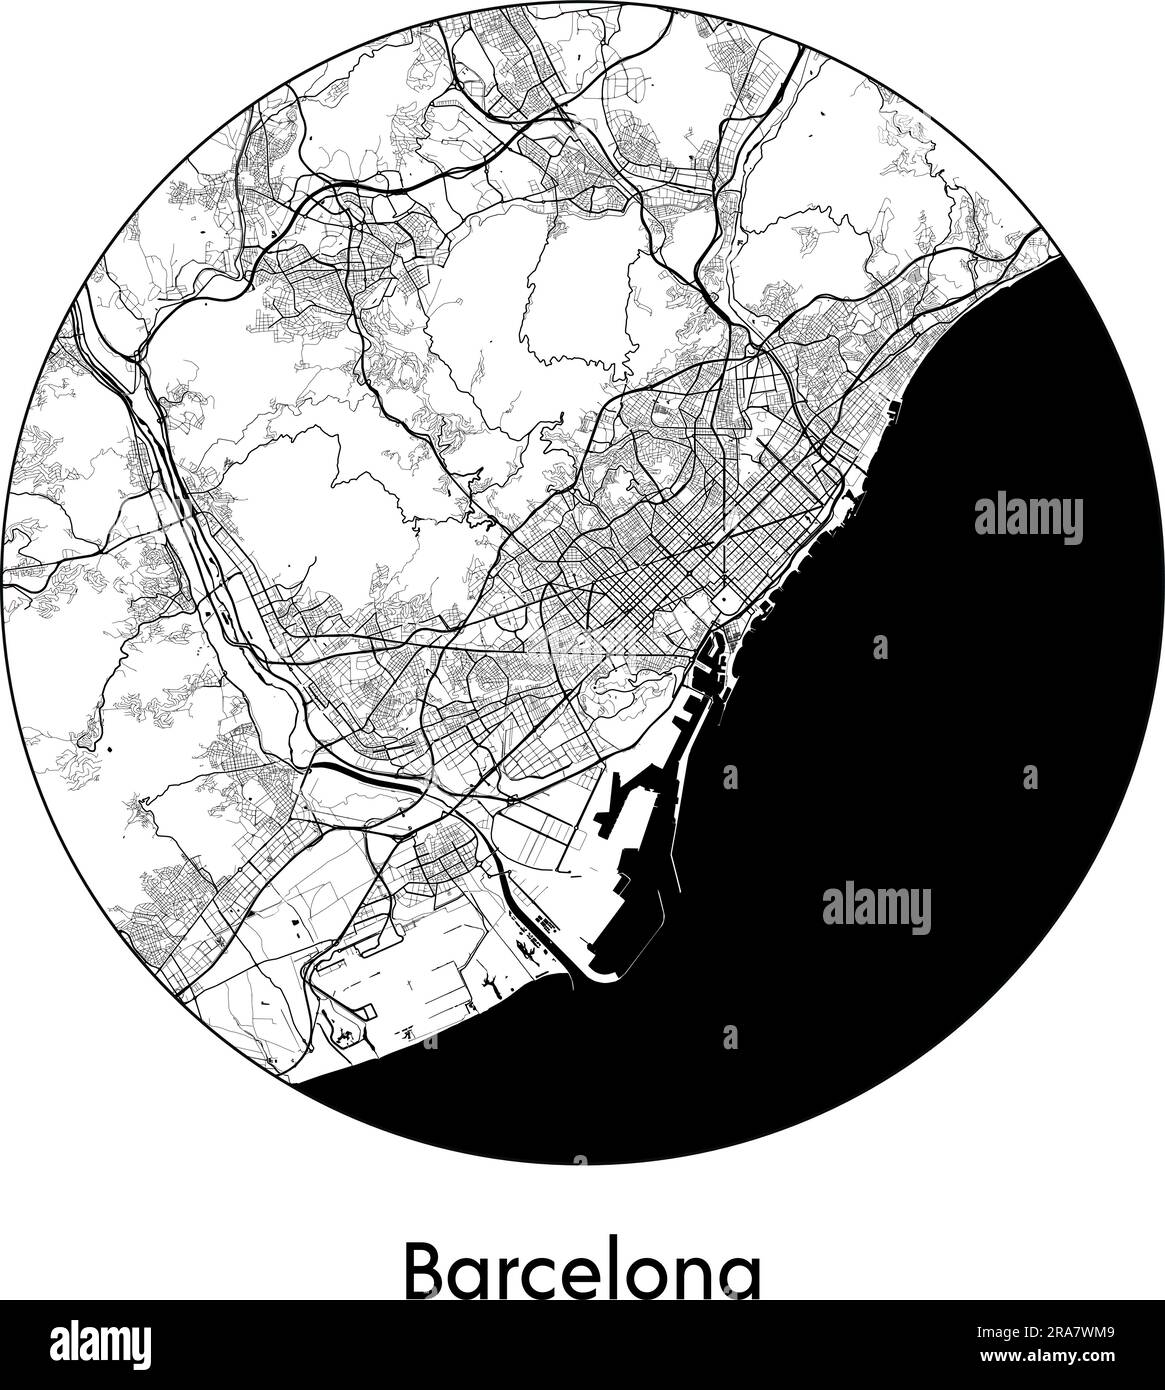 City Map Barcelona Spain Europe vector illustration black white Stock ...